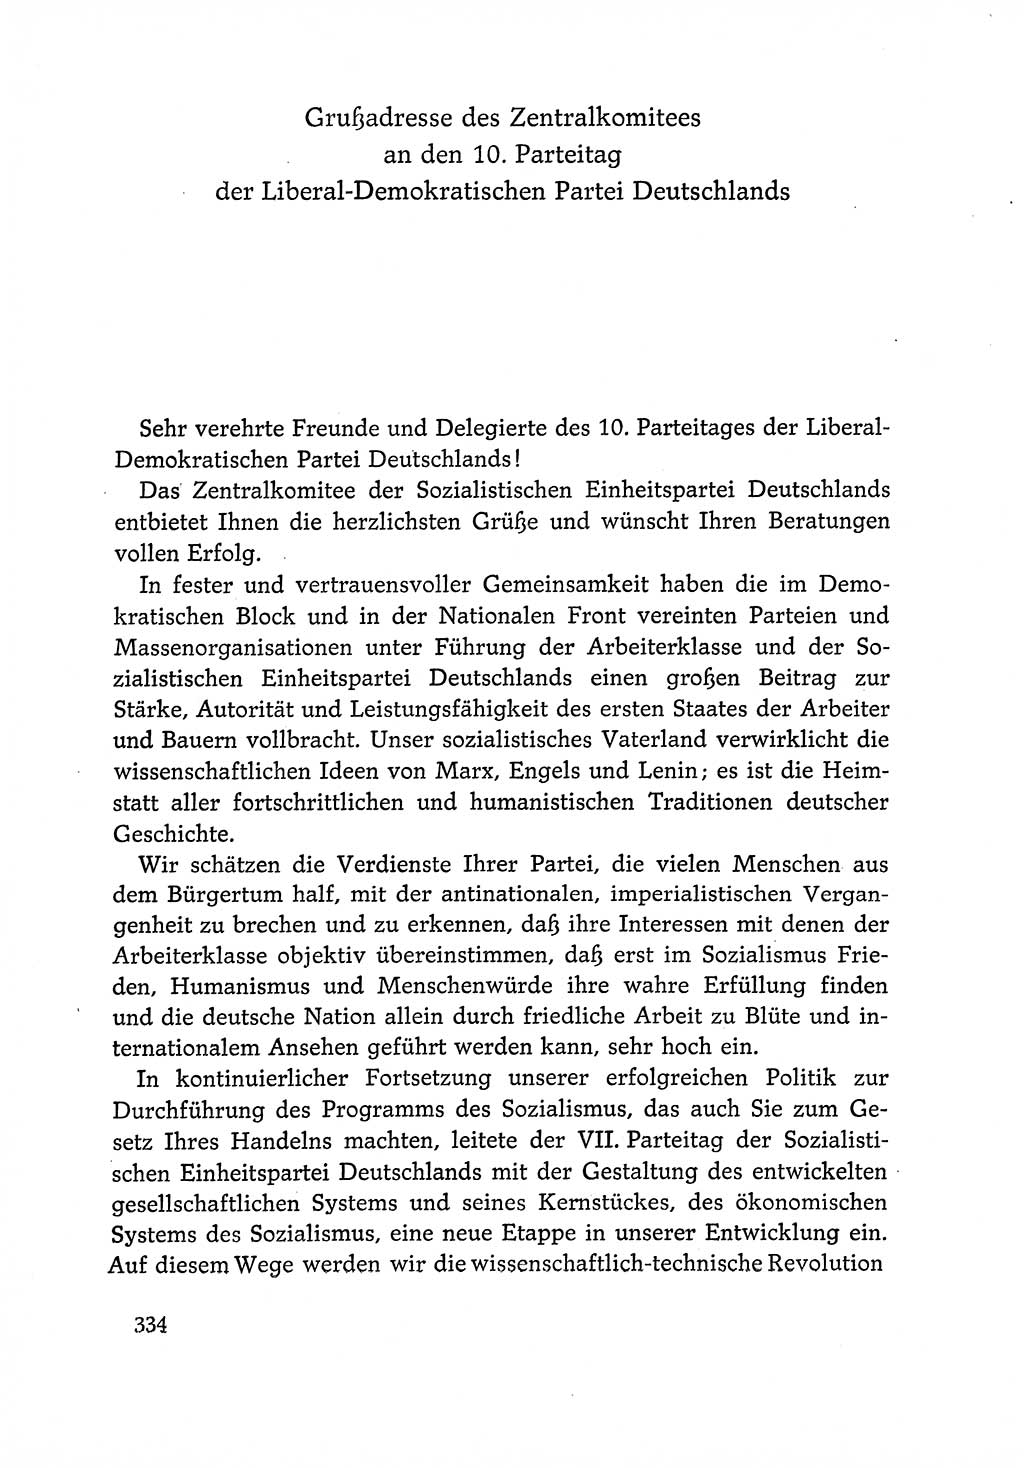 Dokumente der Sozialistischen Einheitspartei Deutschlands (SED) [Deutsche Demokratische Republik (DDR)] 1966-1967, Seite 334 (Dok. SED DDR 1966-1967, S. 334)